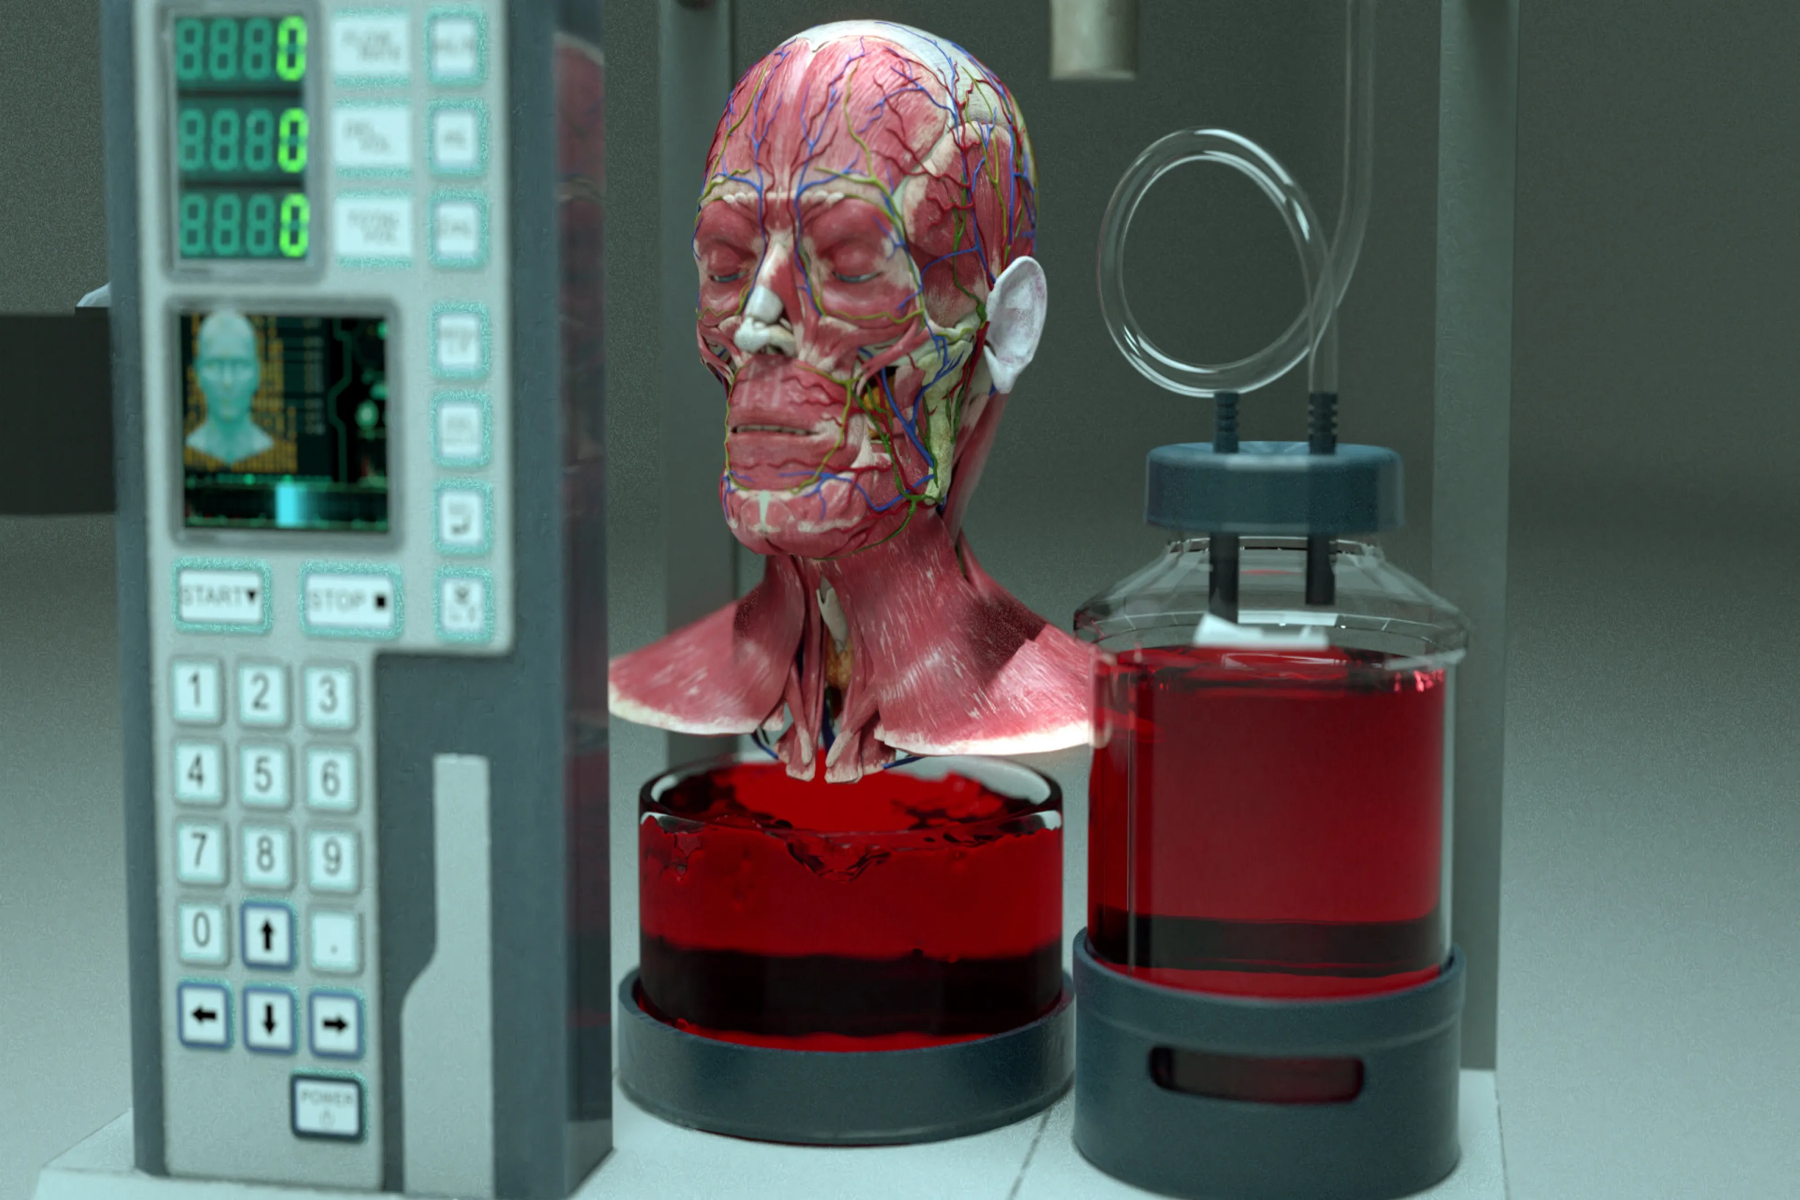 Ρομπότ μεταμόσχευση: Τα ρομπότ θα μπορούσαν μια μέρα να κάνουν μεταμόσχευση κεφαλιού